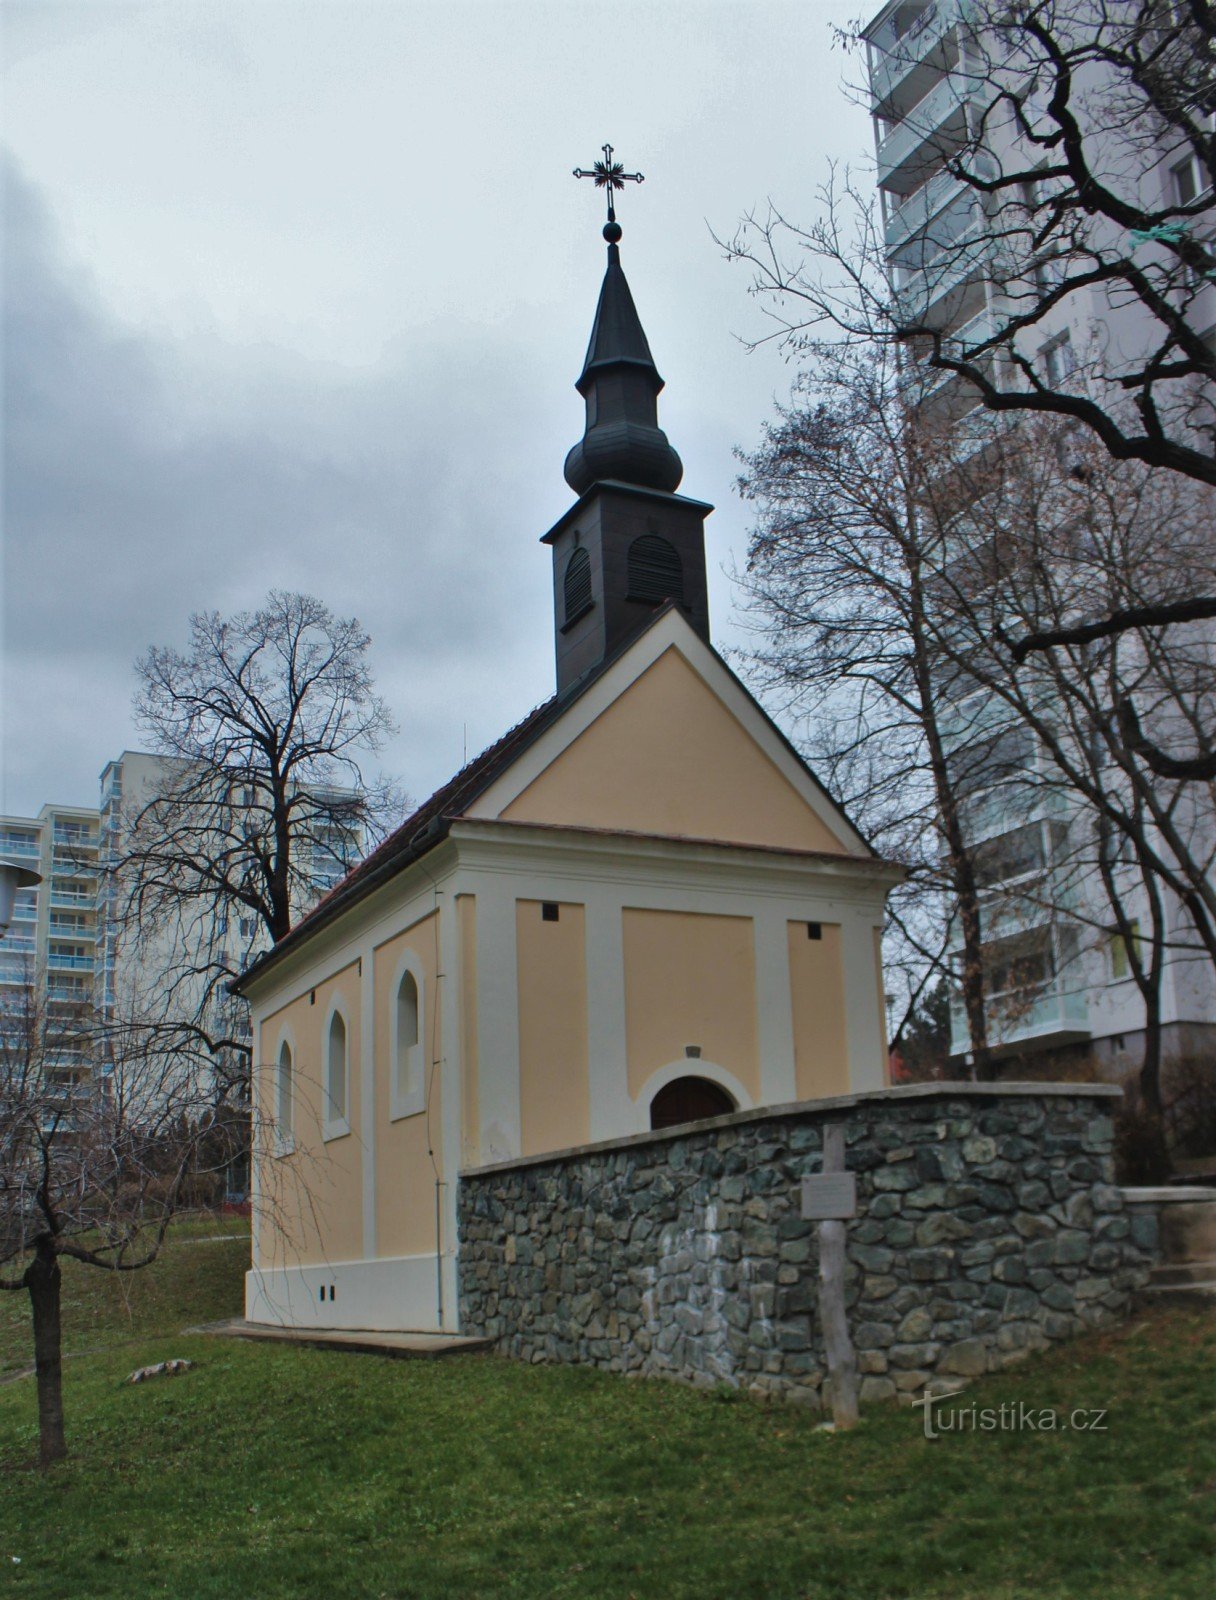 Brno-Bohunice - nhà nguyện của St. Cyril và Methodius